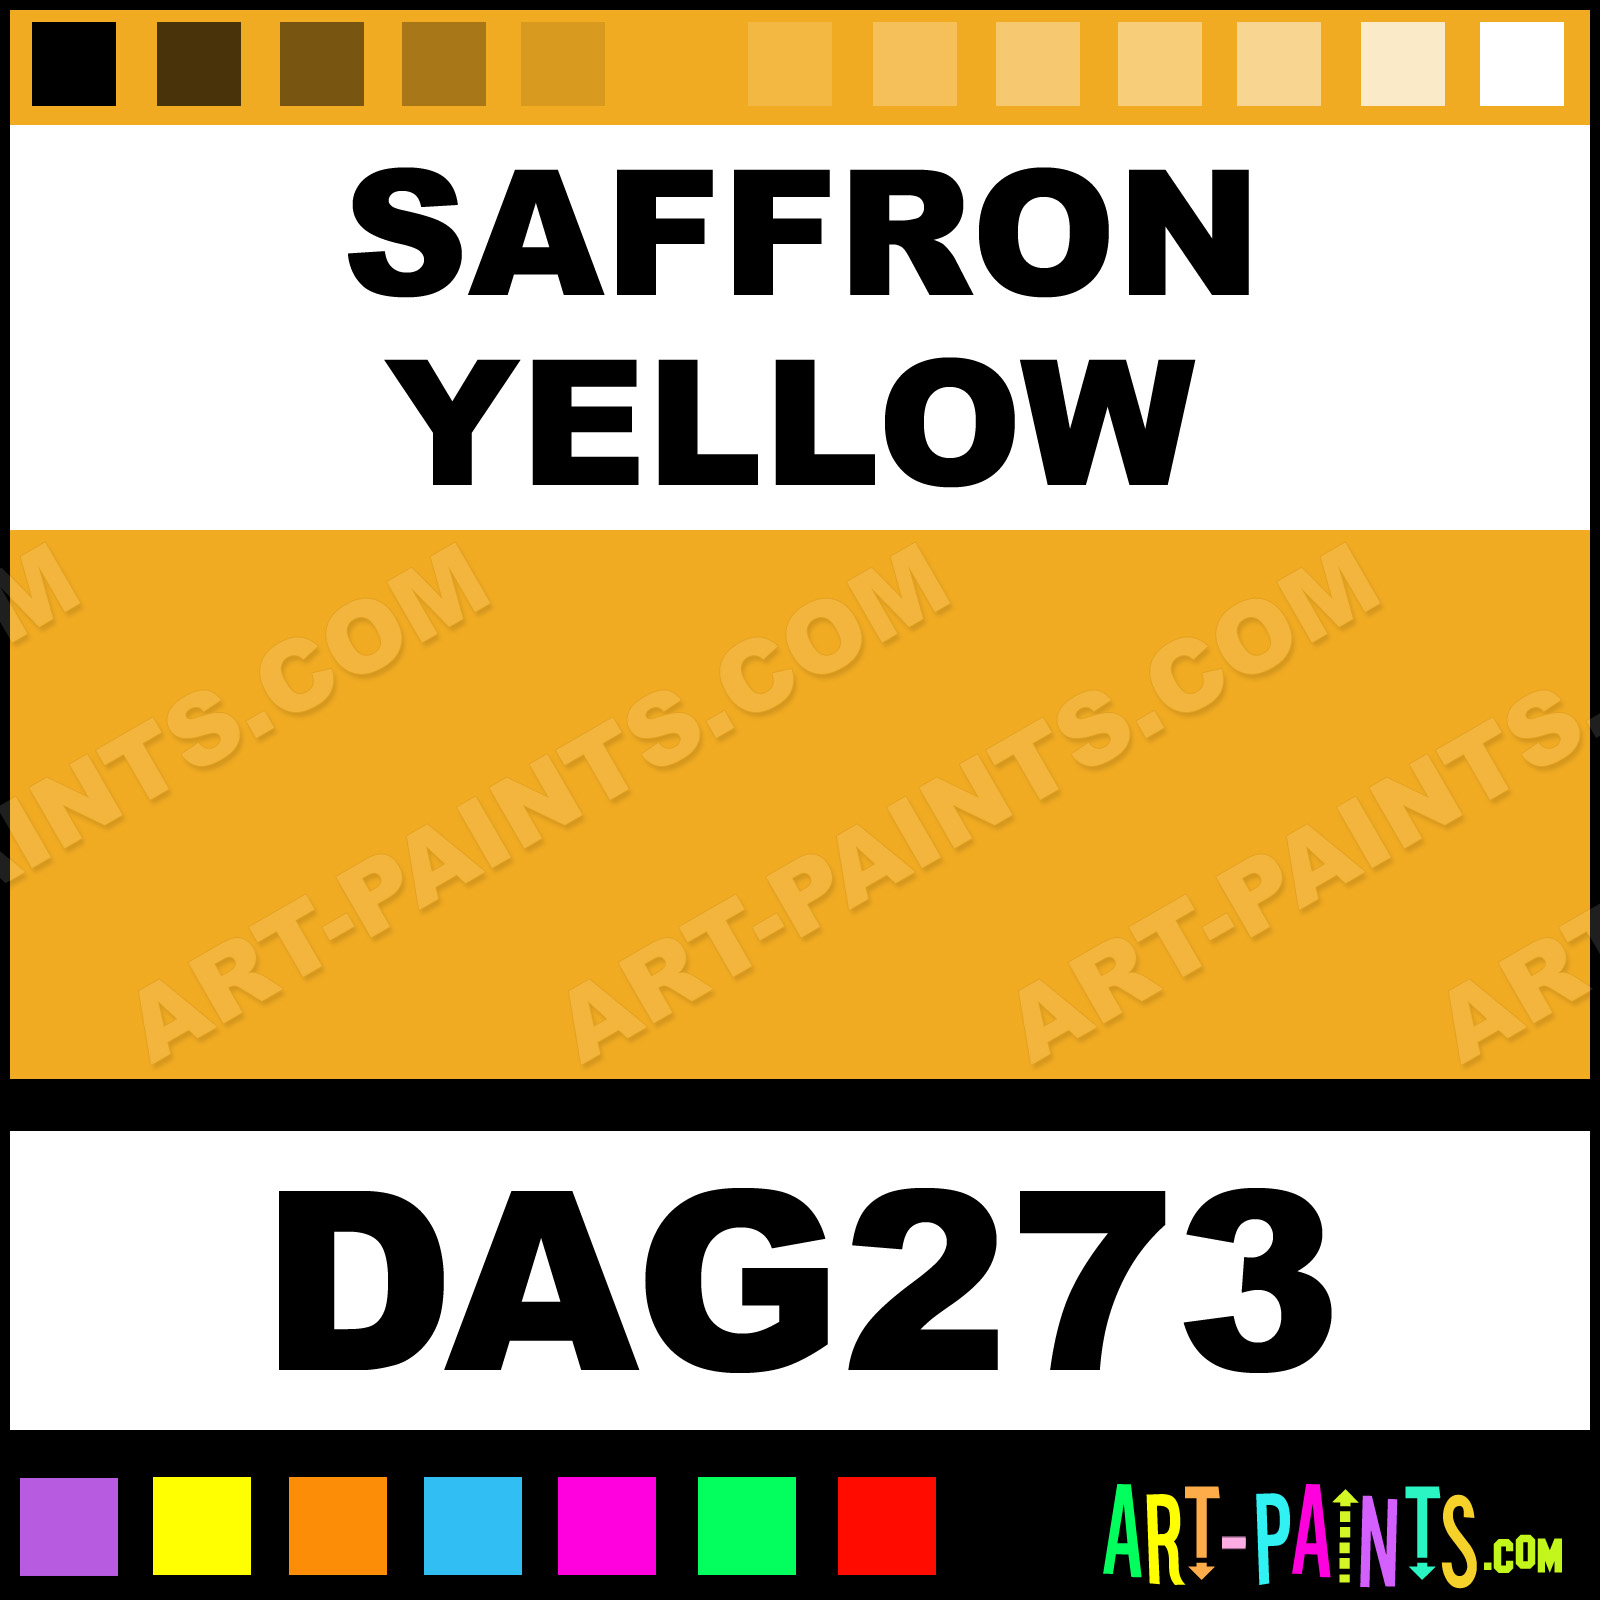 saffron color code